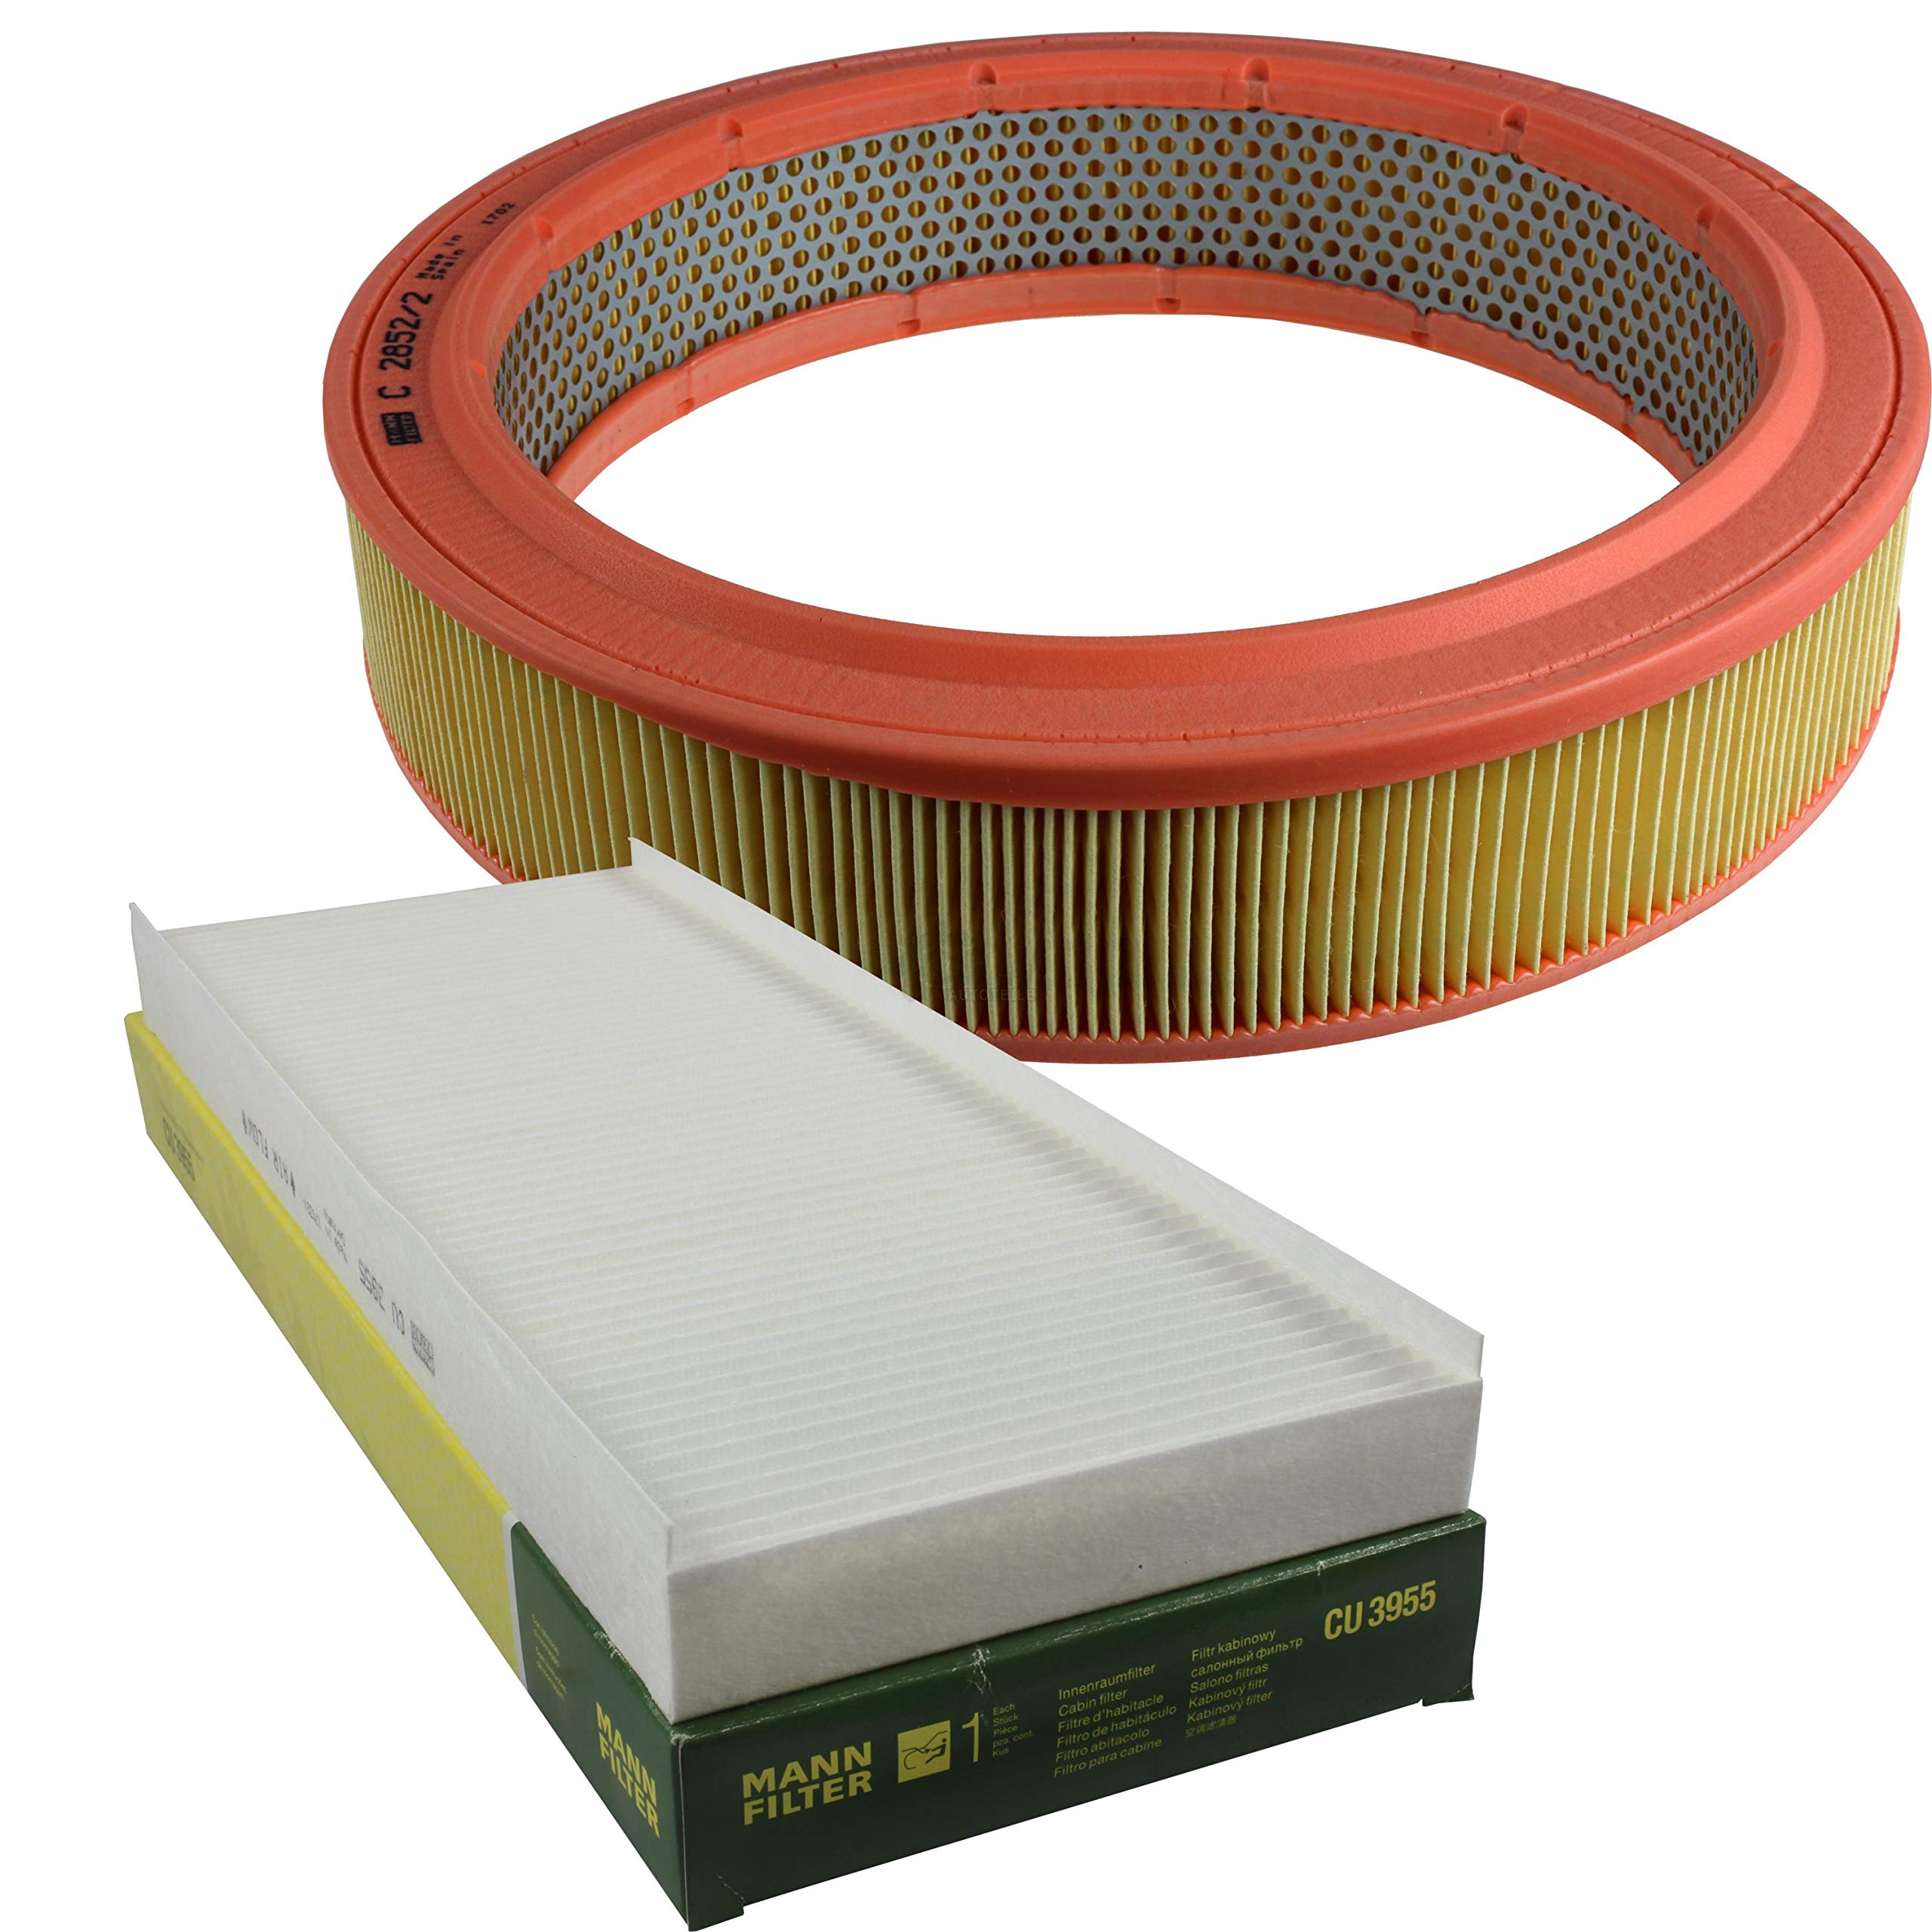 MANN-FILTER Inspektions Set Inspektionspaket Luftfilter Innenraumfilter